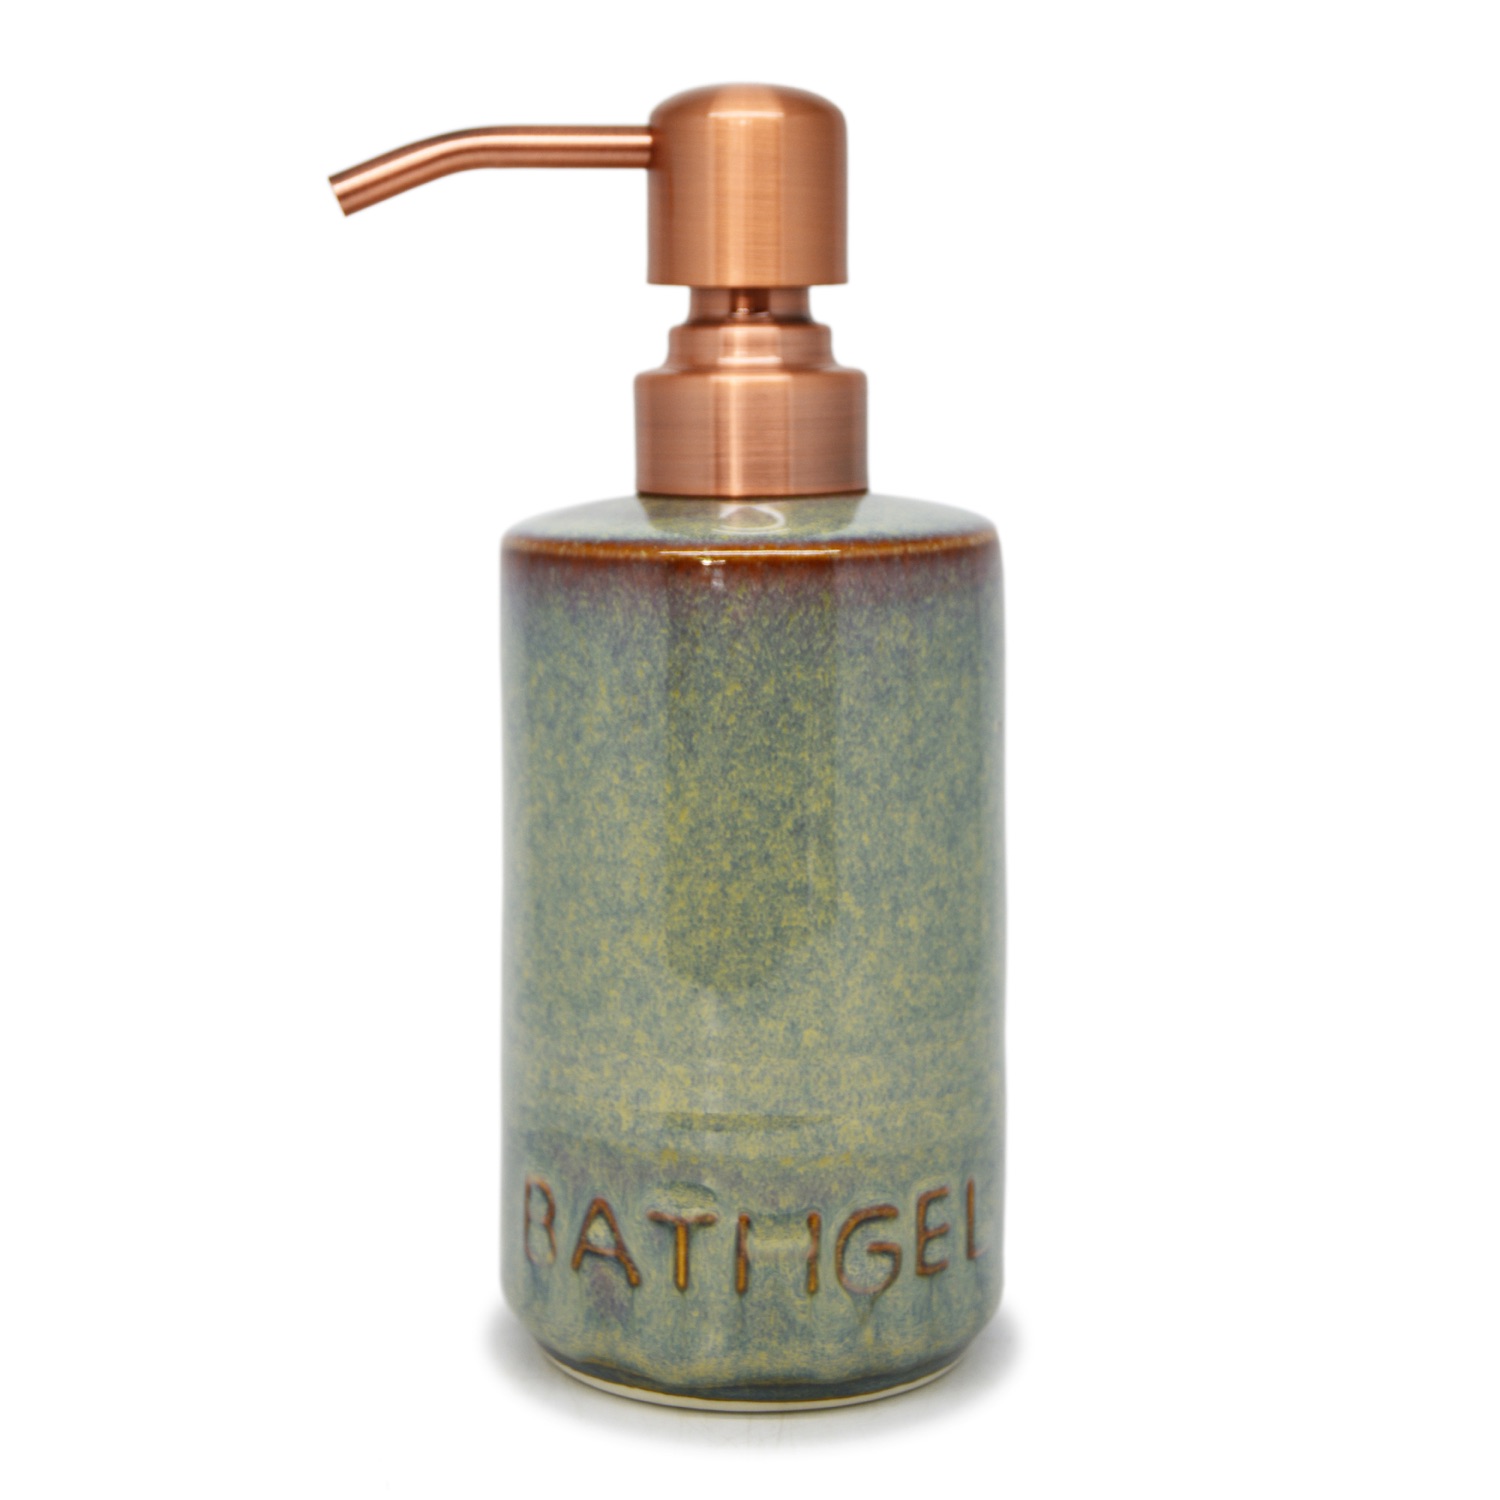 Pillar Liquid Dispenser - Bath Gel - Brass-Plated Pump